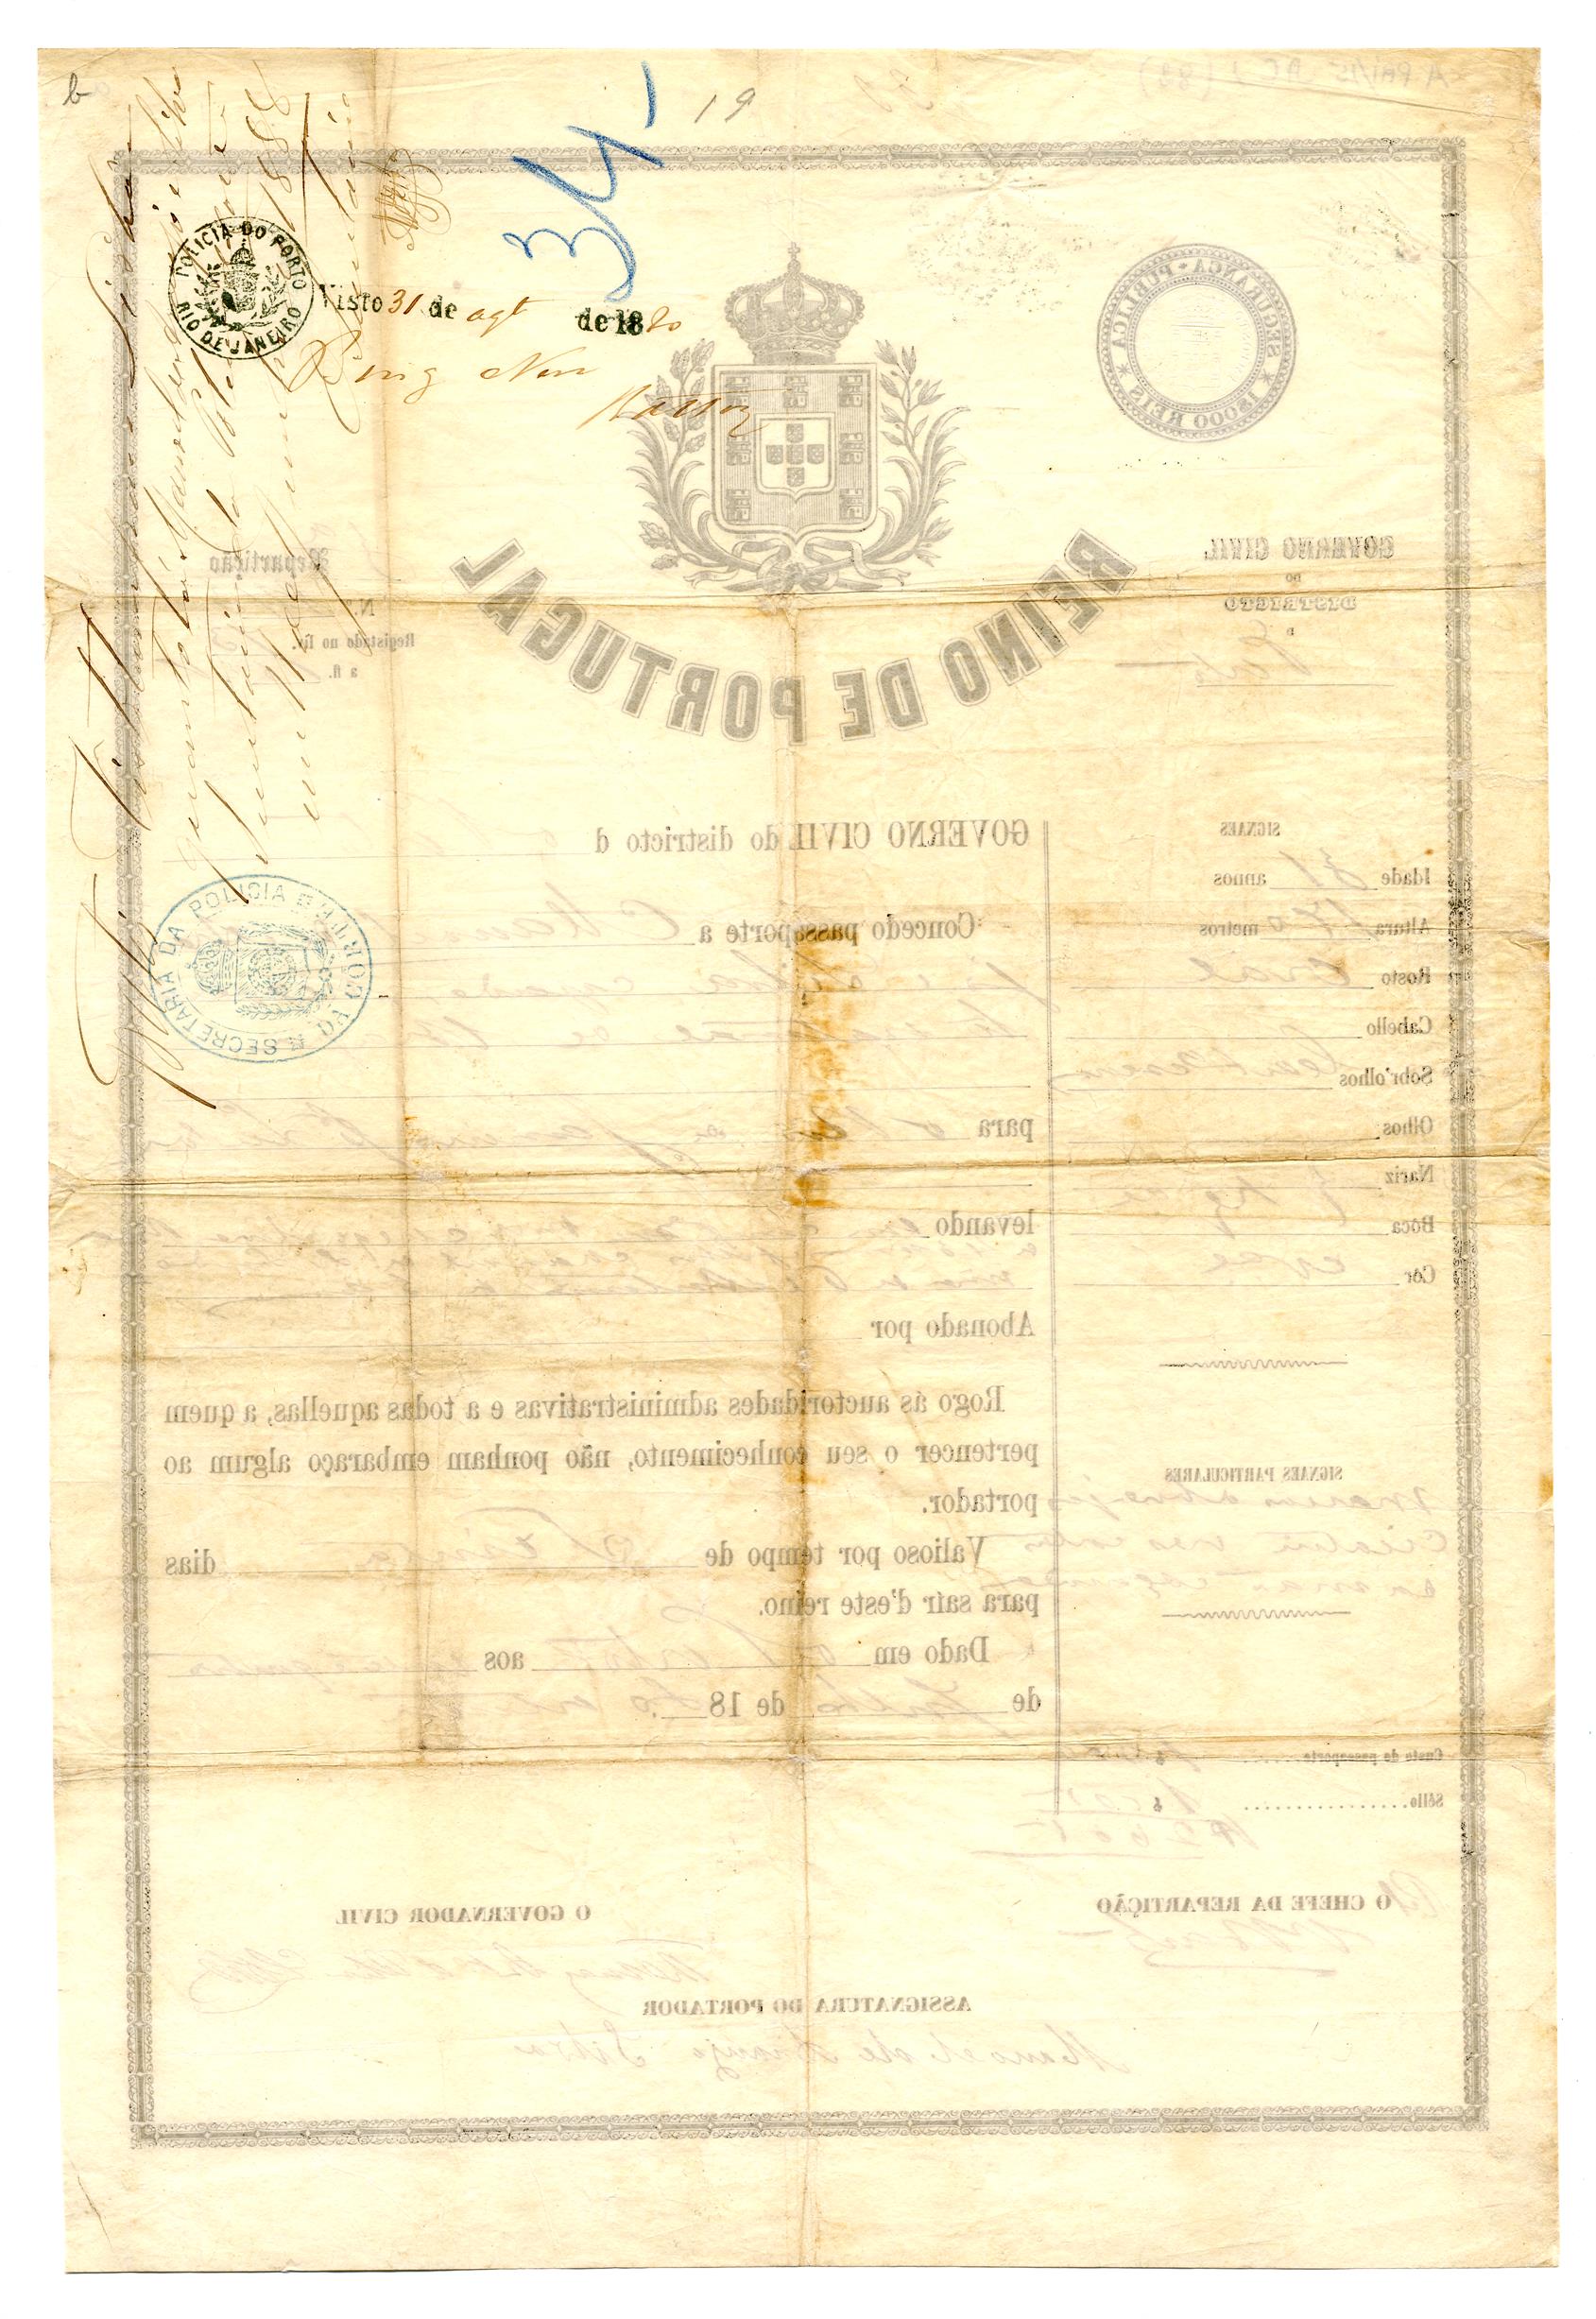 Passaporte de Manuel de Araújo e Silva